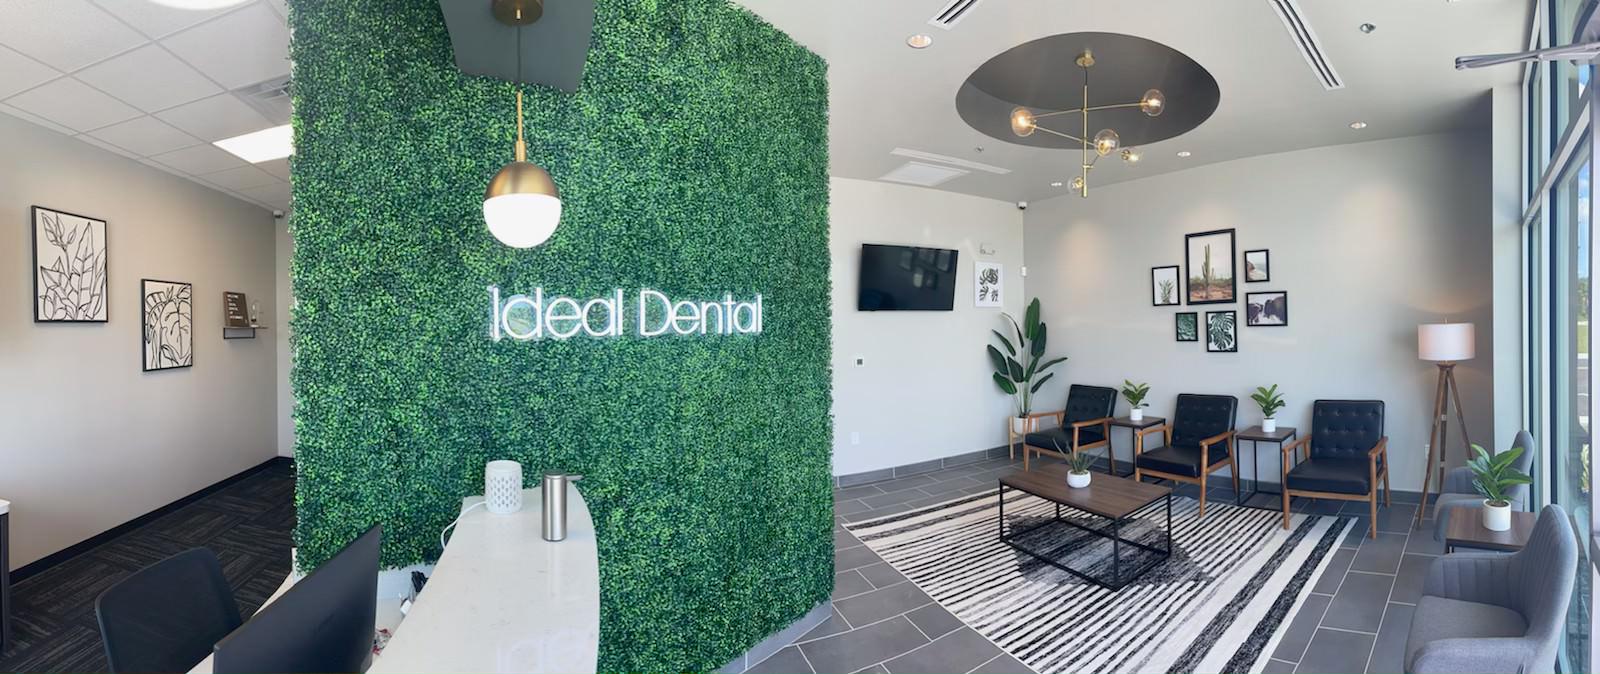 Image 3 | Ideal Dental Belterra